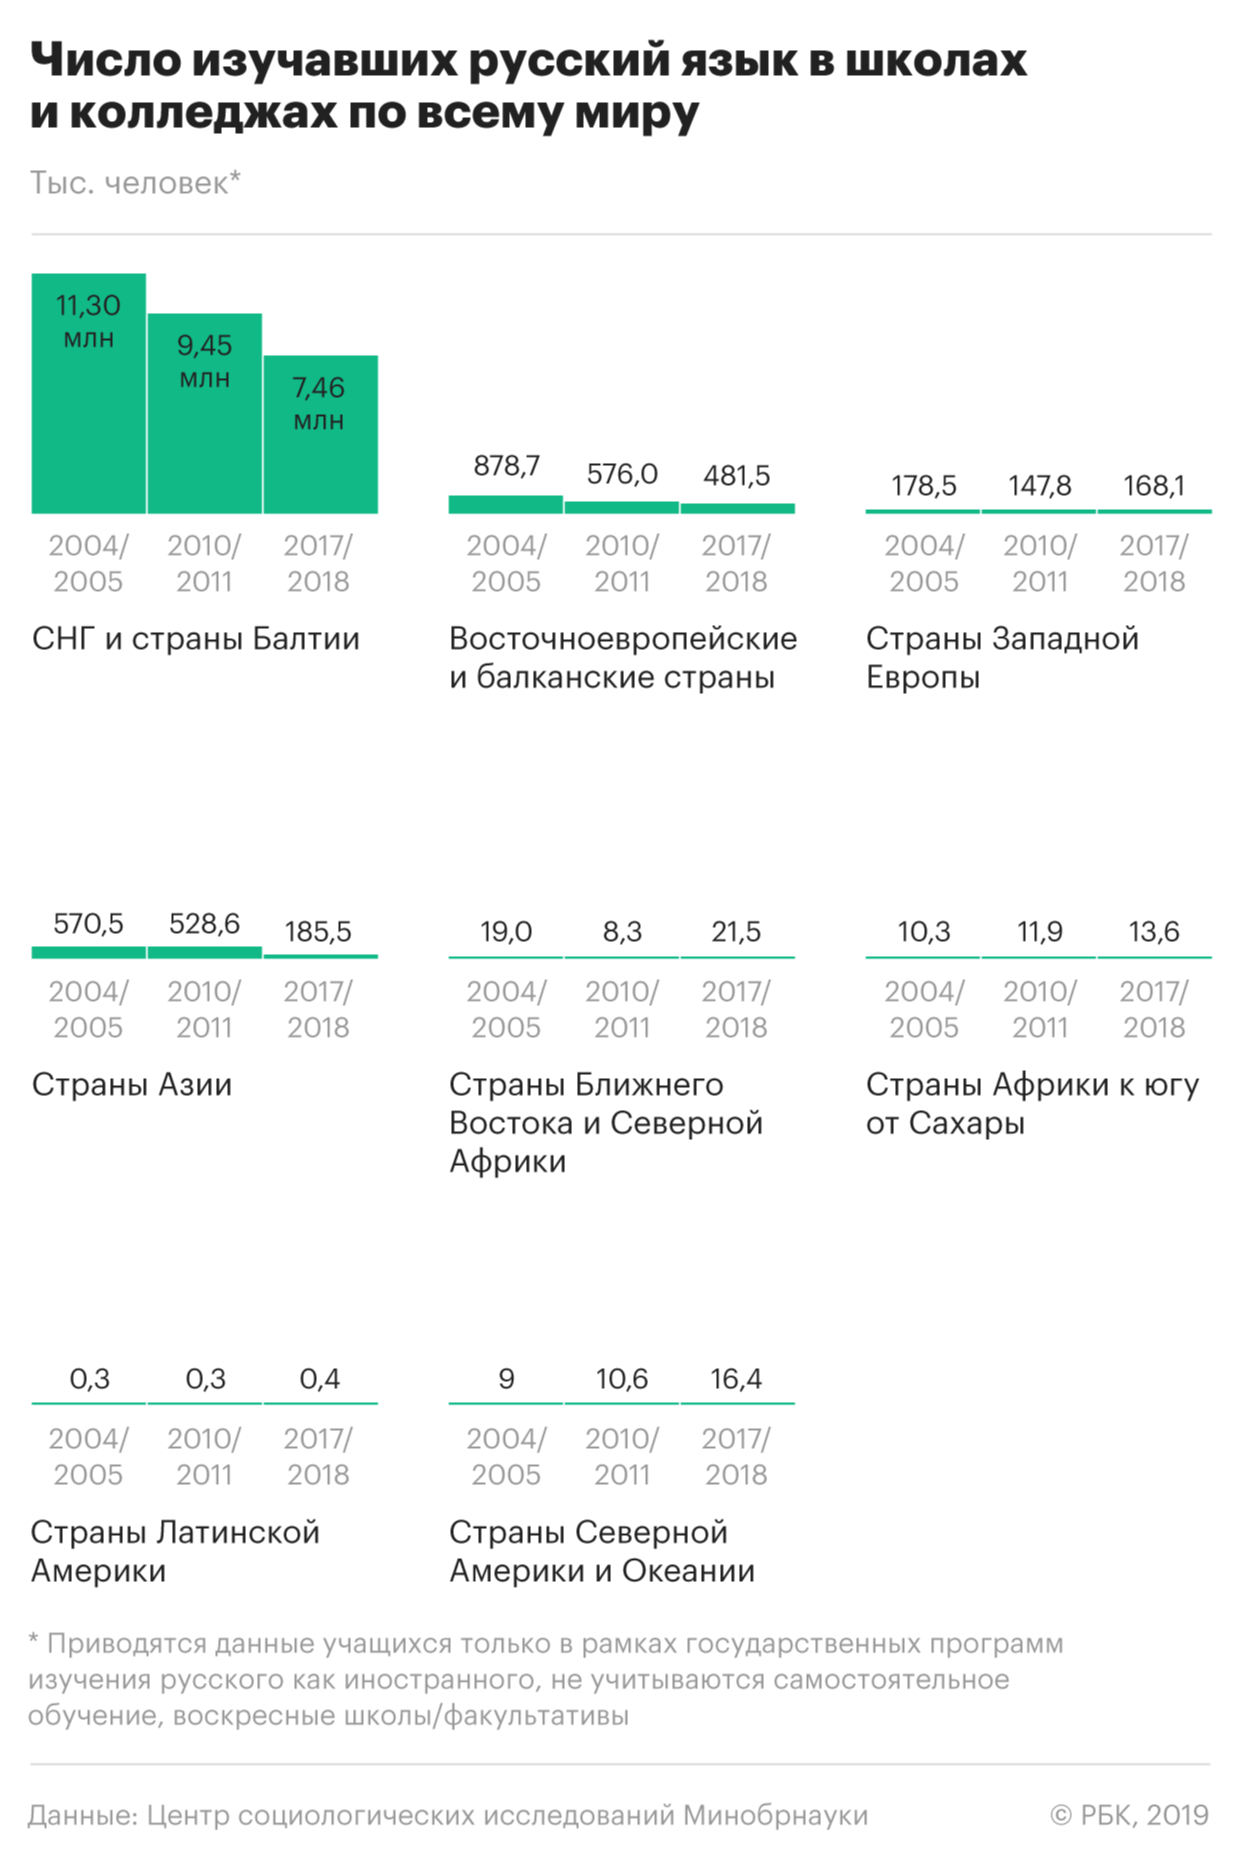 Число изучающих русский язык в мире упало в 2 раза со времен распада СССР